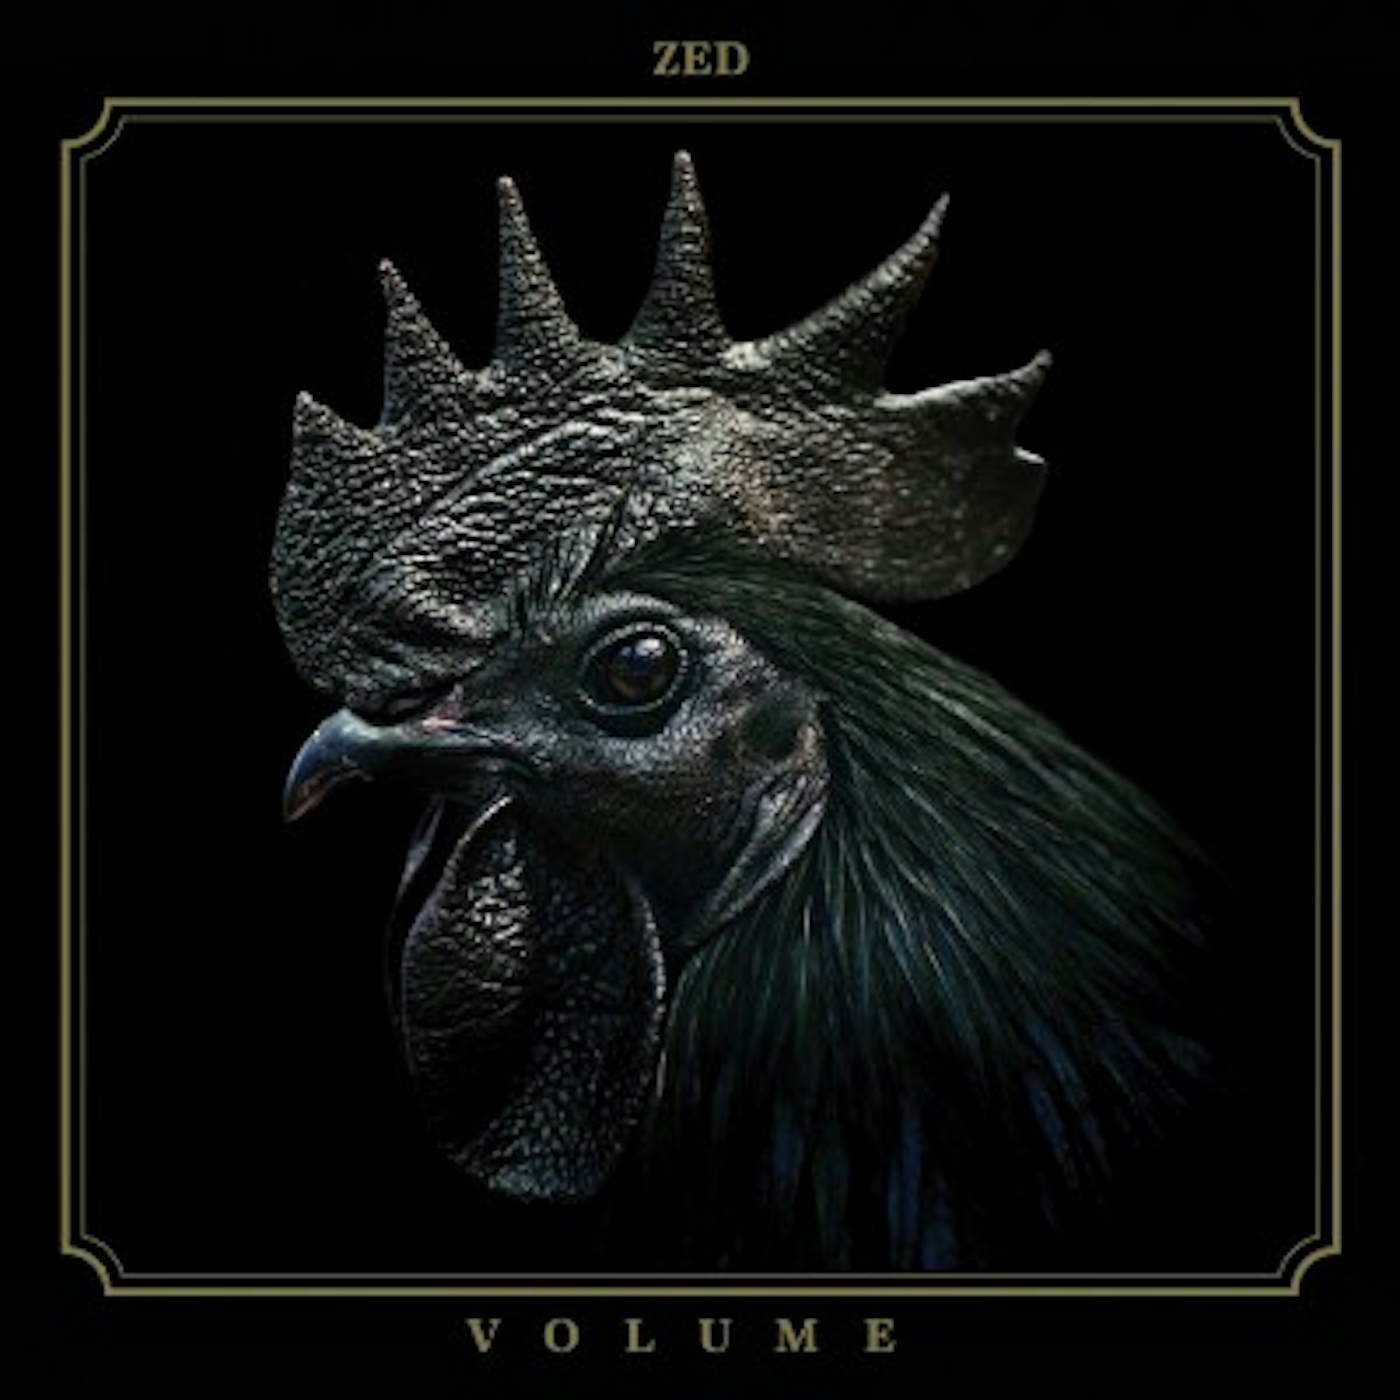 Zed Volume Vinyl Record